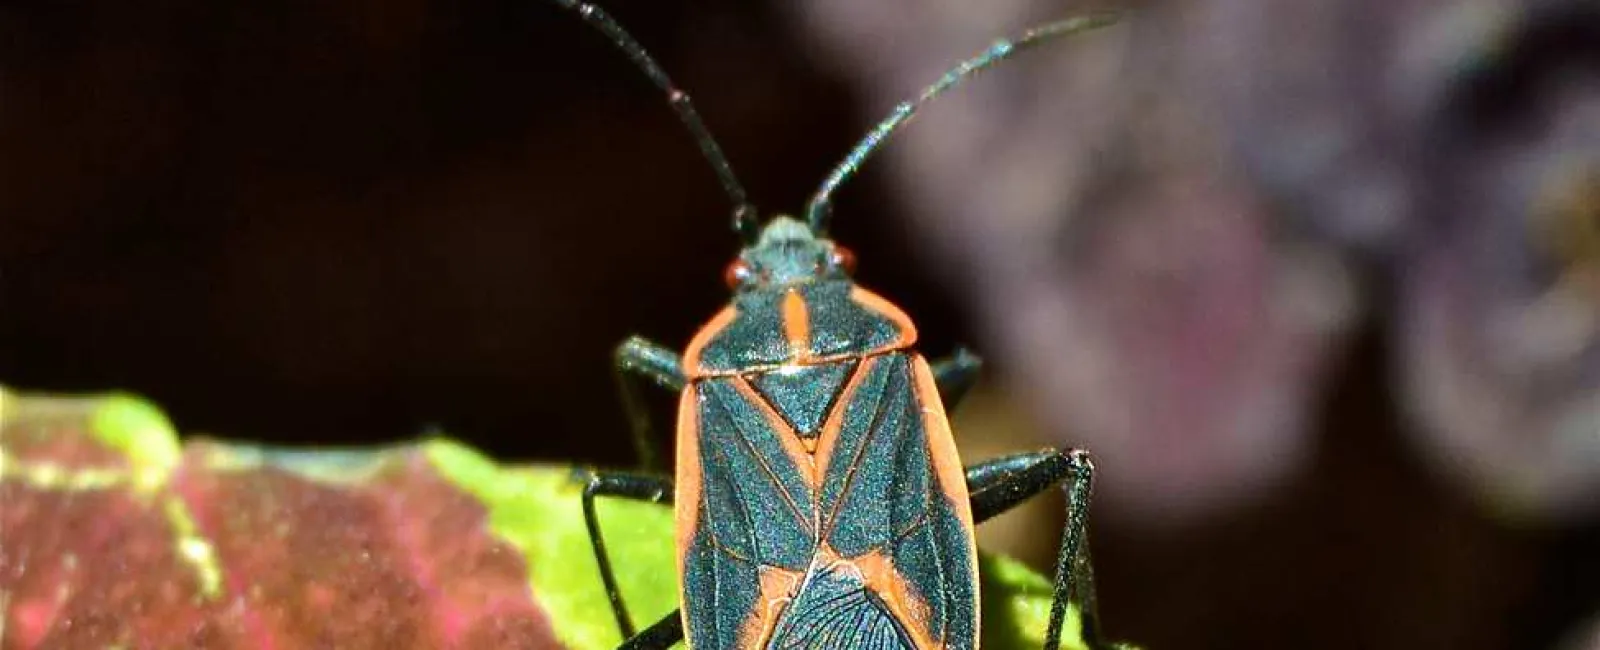 a boxelder bug on a leaf